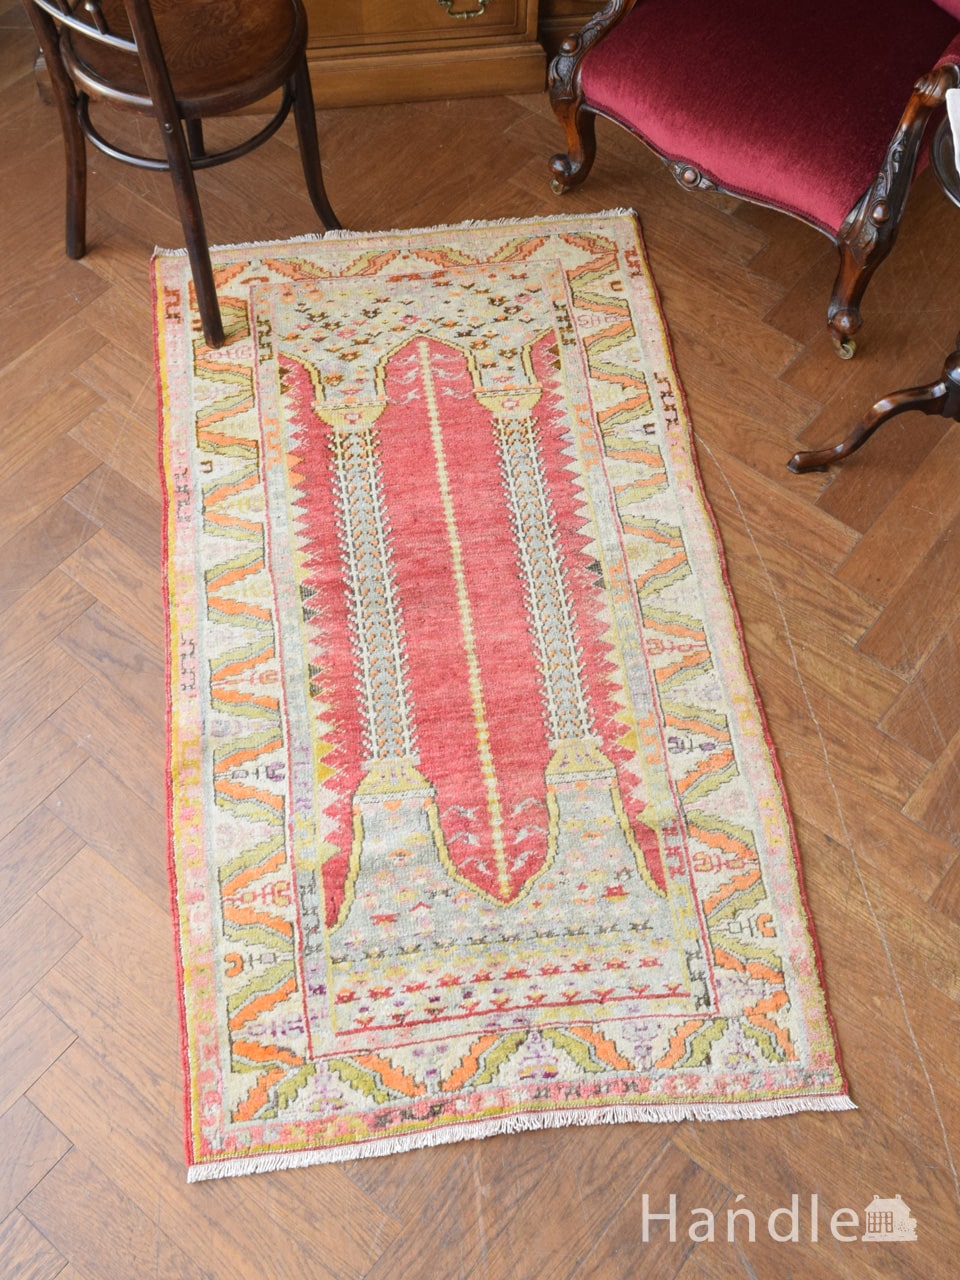 ビンテージのおしゃれな絨毯、アナトリアの華やかなデザインのトライバルラグ (m-6405-z)